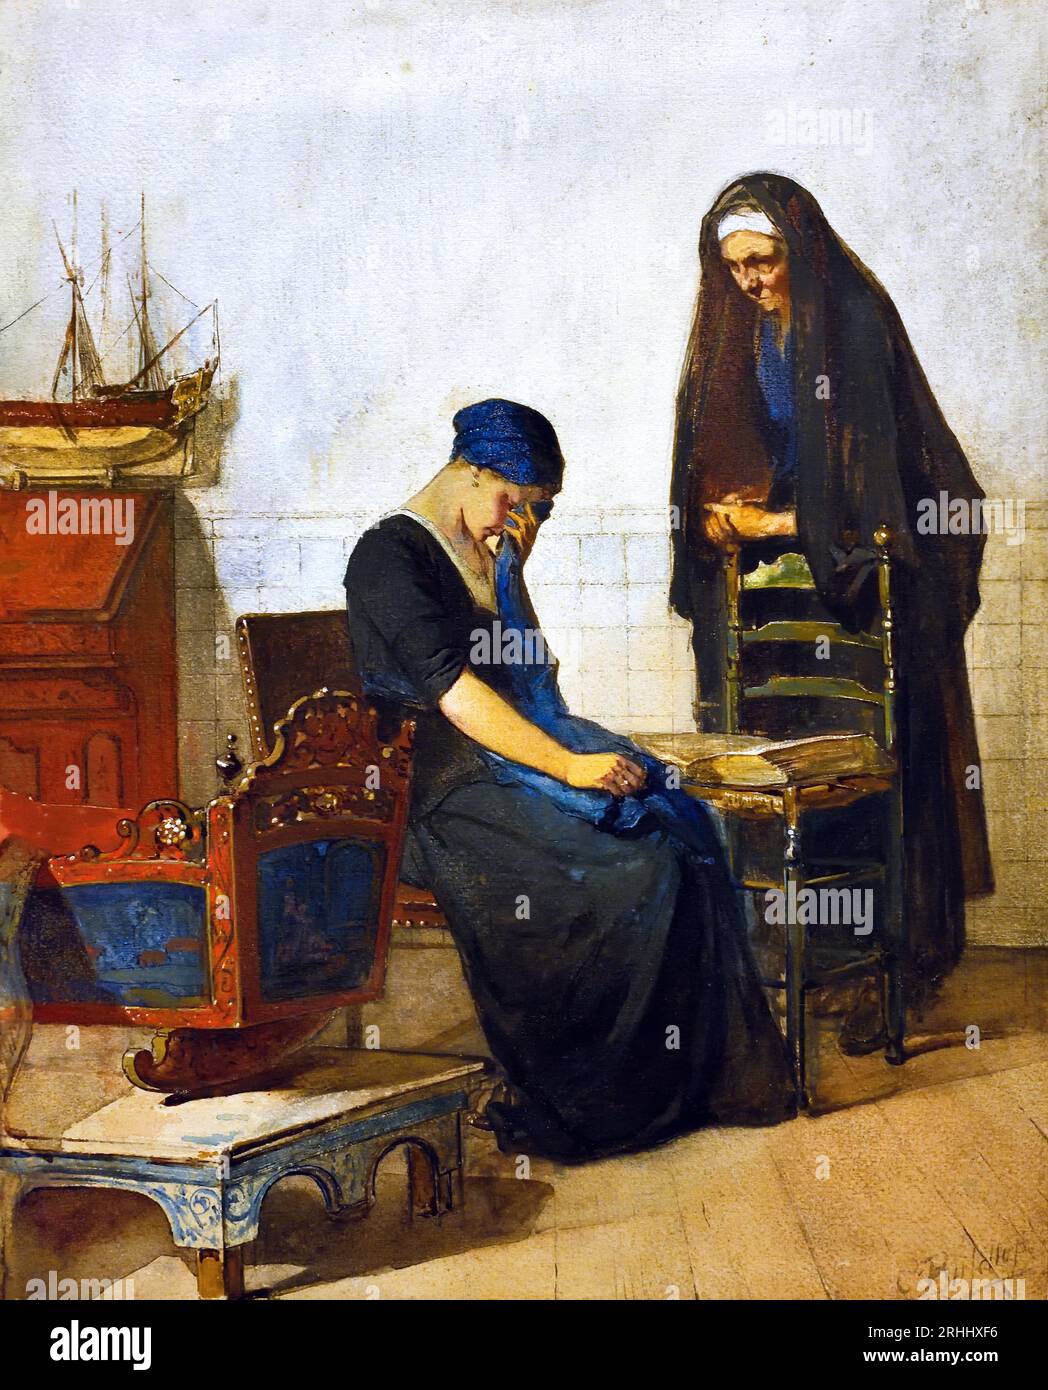 Berceau vide 1869-1880 Hindeloopen, Frise. Christoffel Bisschop (1828-1904) artiste frison (épouse anglaise Kate Bisschop-Swift) (1834-1928). Néerlandais, les pays-Bas, mère en deuil par le berceau ( bébé mort) Banque D'Images